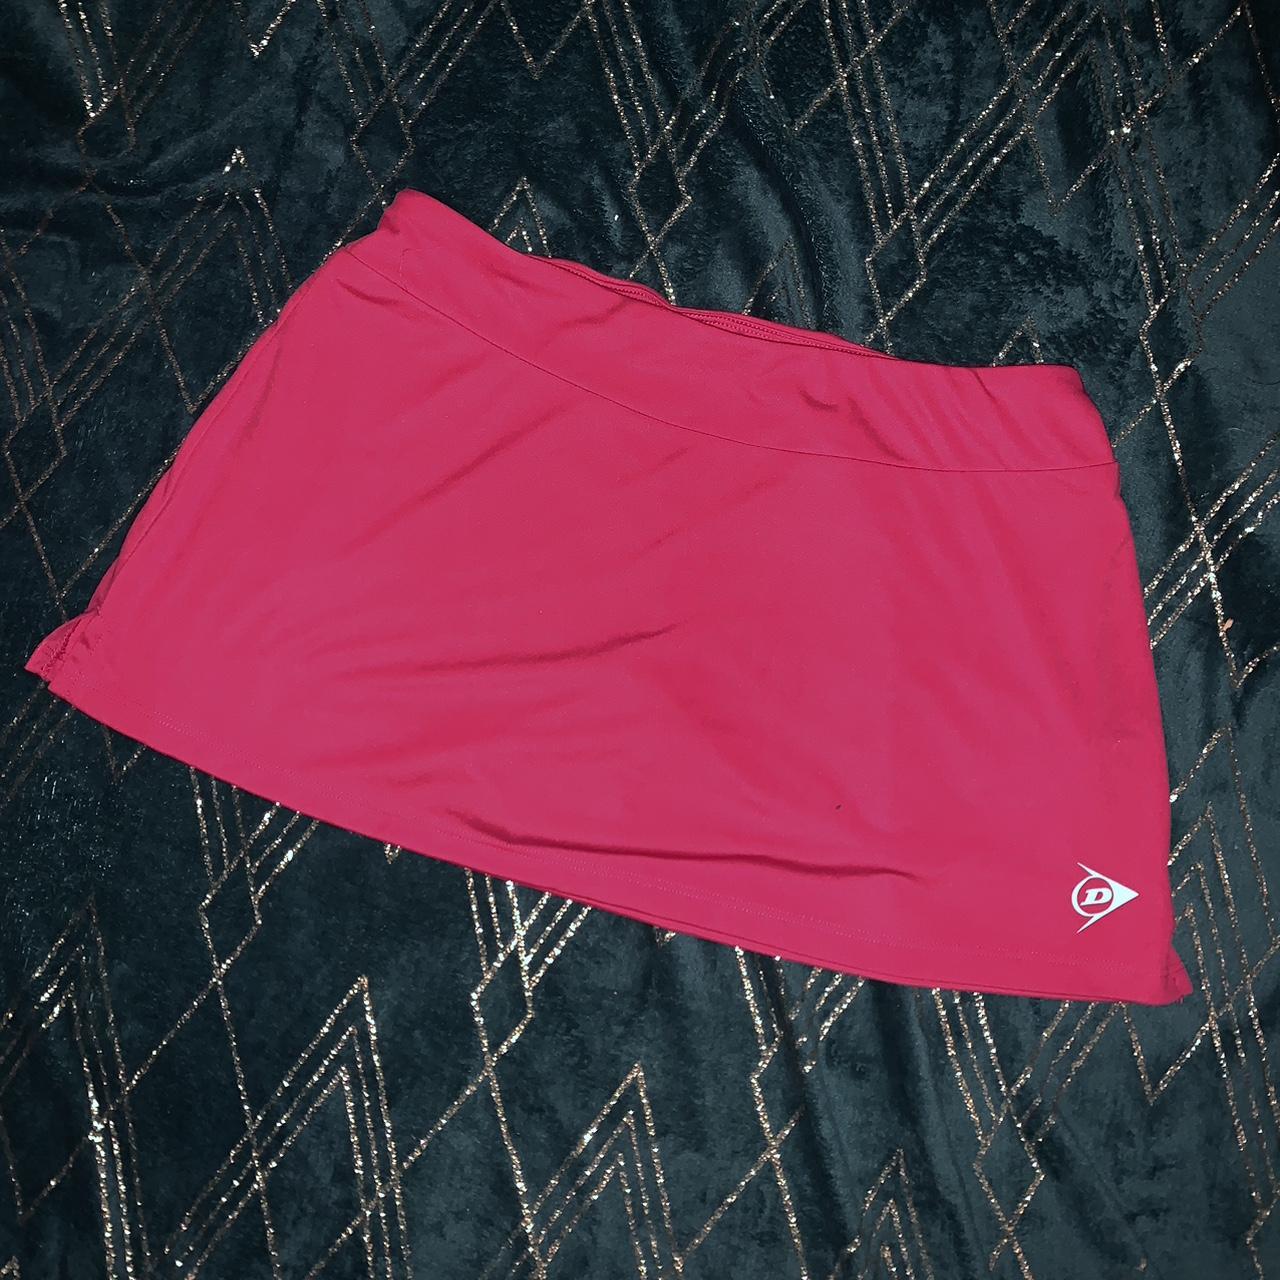 Dunlop Women's Pink and Red Skirt | Depop